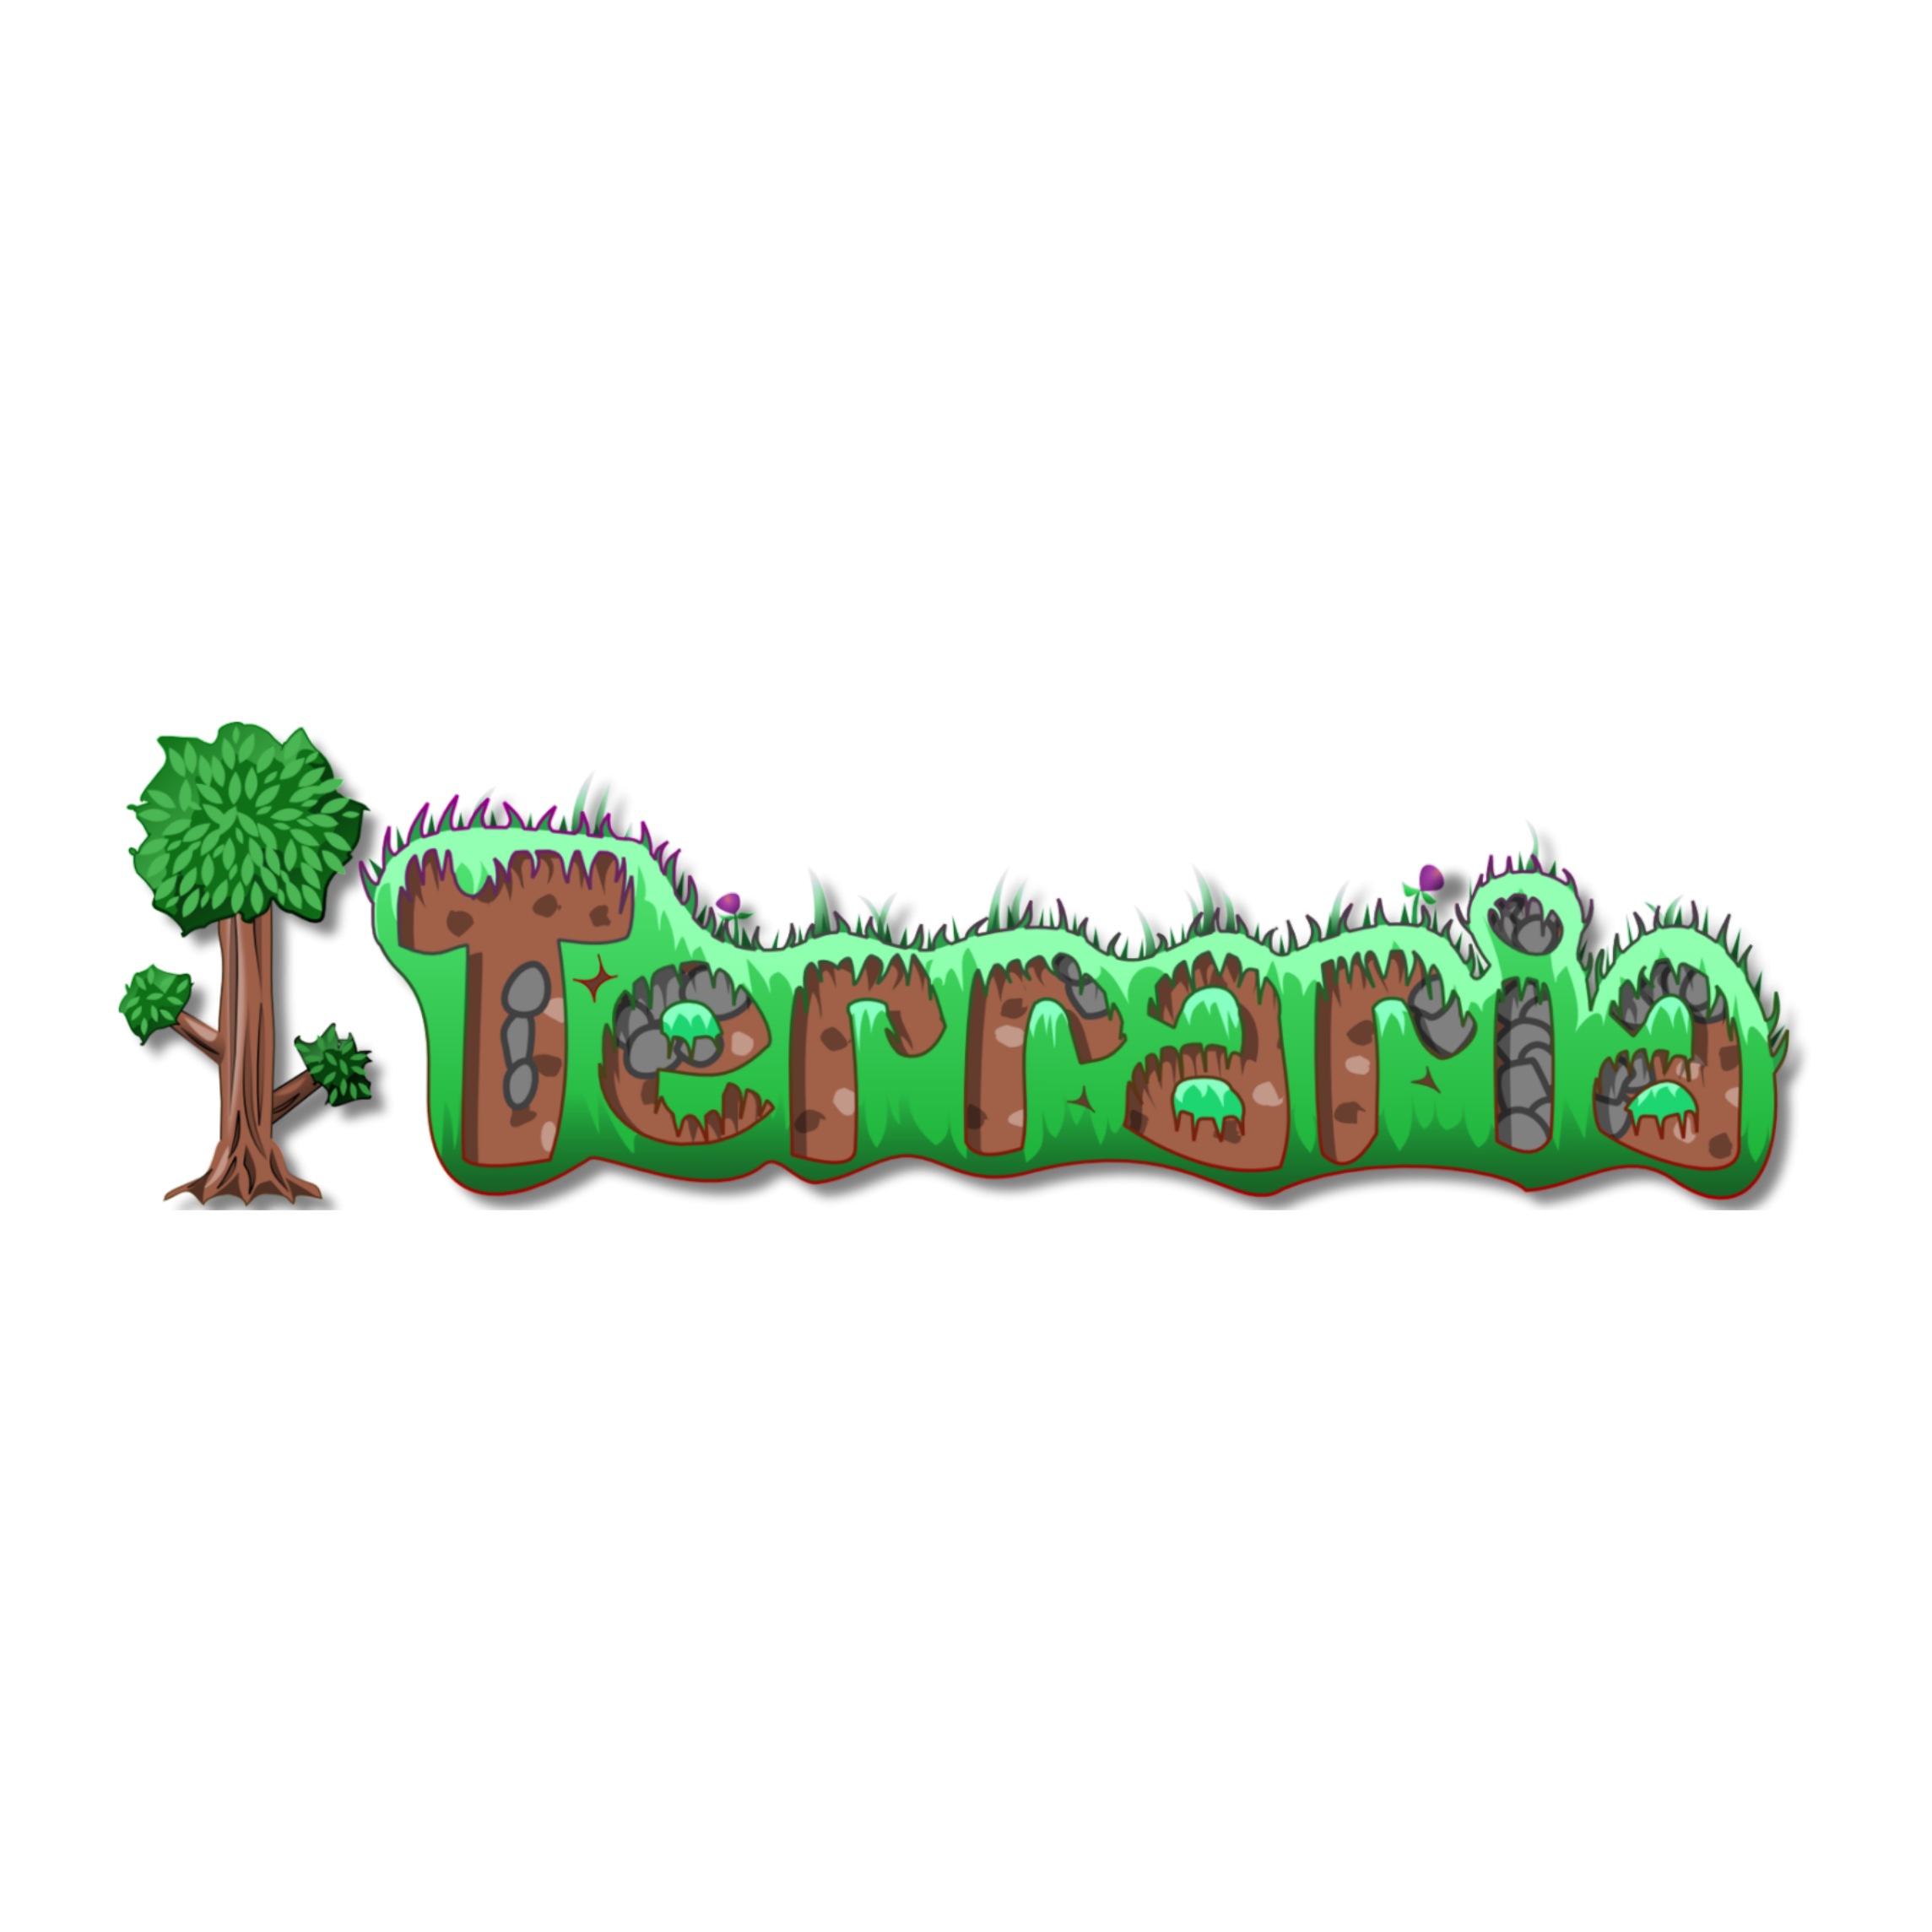 Terraria logo pixel art фото 2